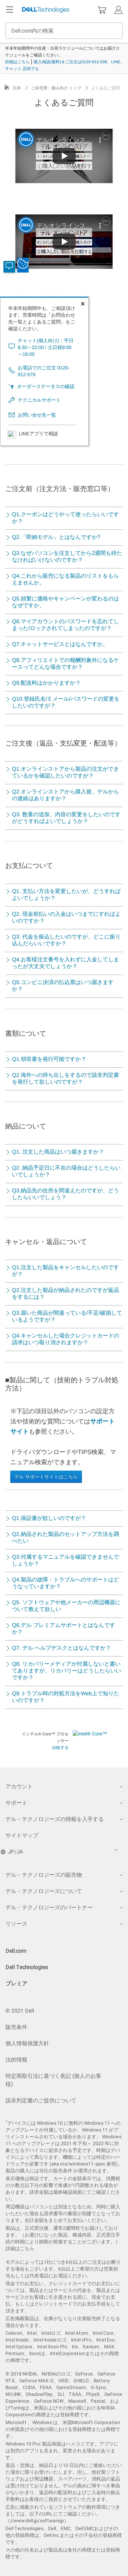 キャプチャ画面 会社名:デル株式会社プロジェクト名:DELL JAPAN(個人向け) 画面名:質問・Q&A デバイス名:SPカテゴリ:EC・オンラインショップタグ:質問・Q&A